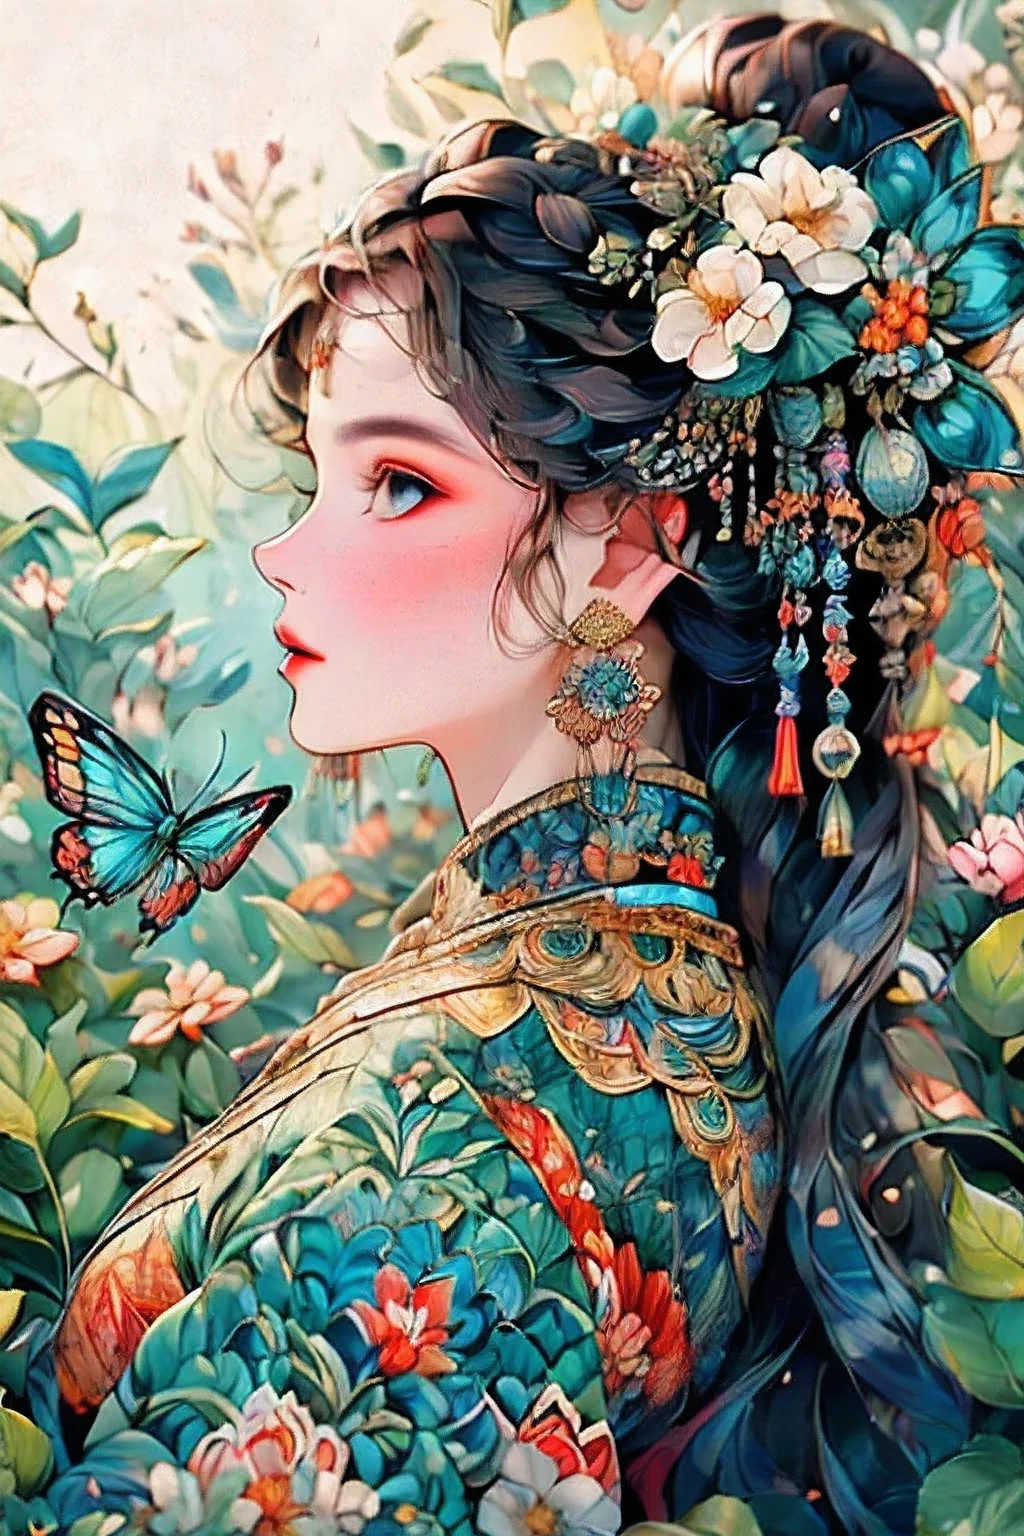 (最好的质量, 杰作, 高分辨率:1.3), 详细的, 仰望天空的女人, 蓝色蝴蝶图案连衣裙, 蓝色的蝴蝶在色彩鲜艳的花朵上飞舞, 令人难以置信的美丽, 禅绕画风格